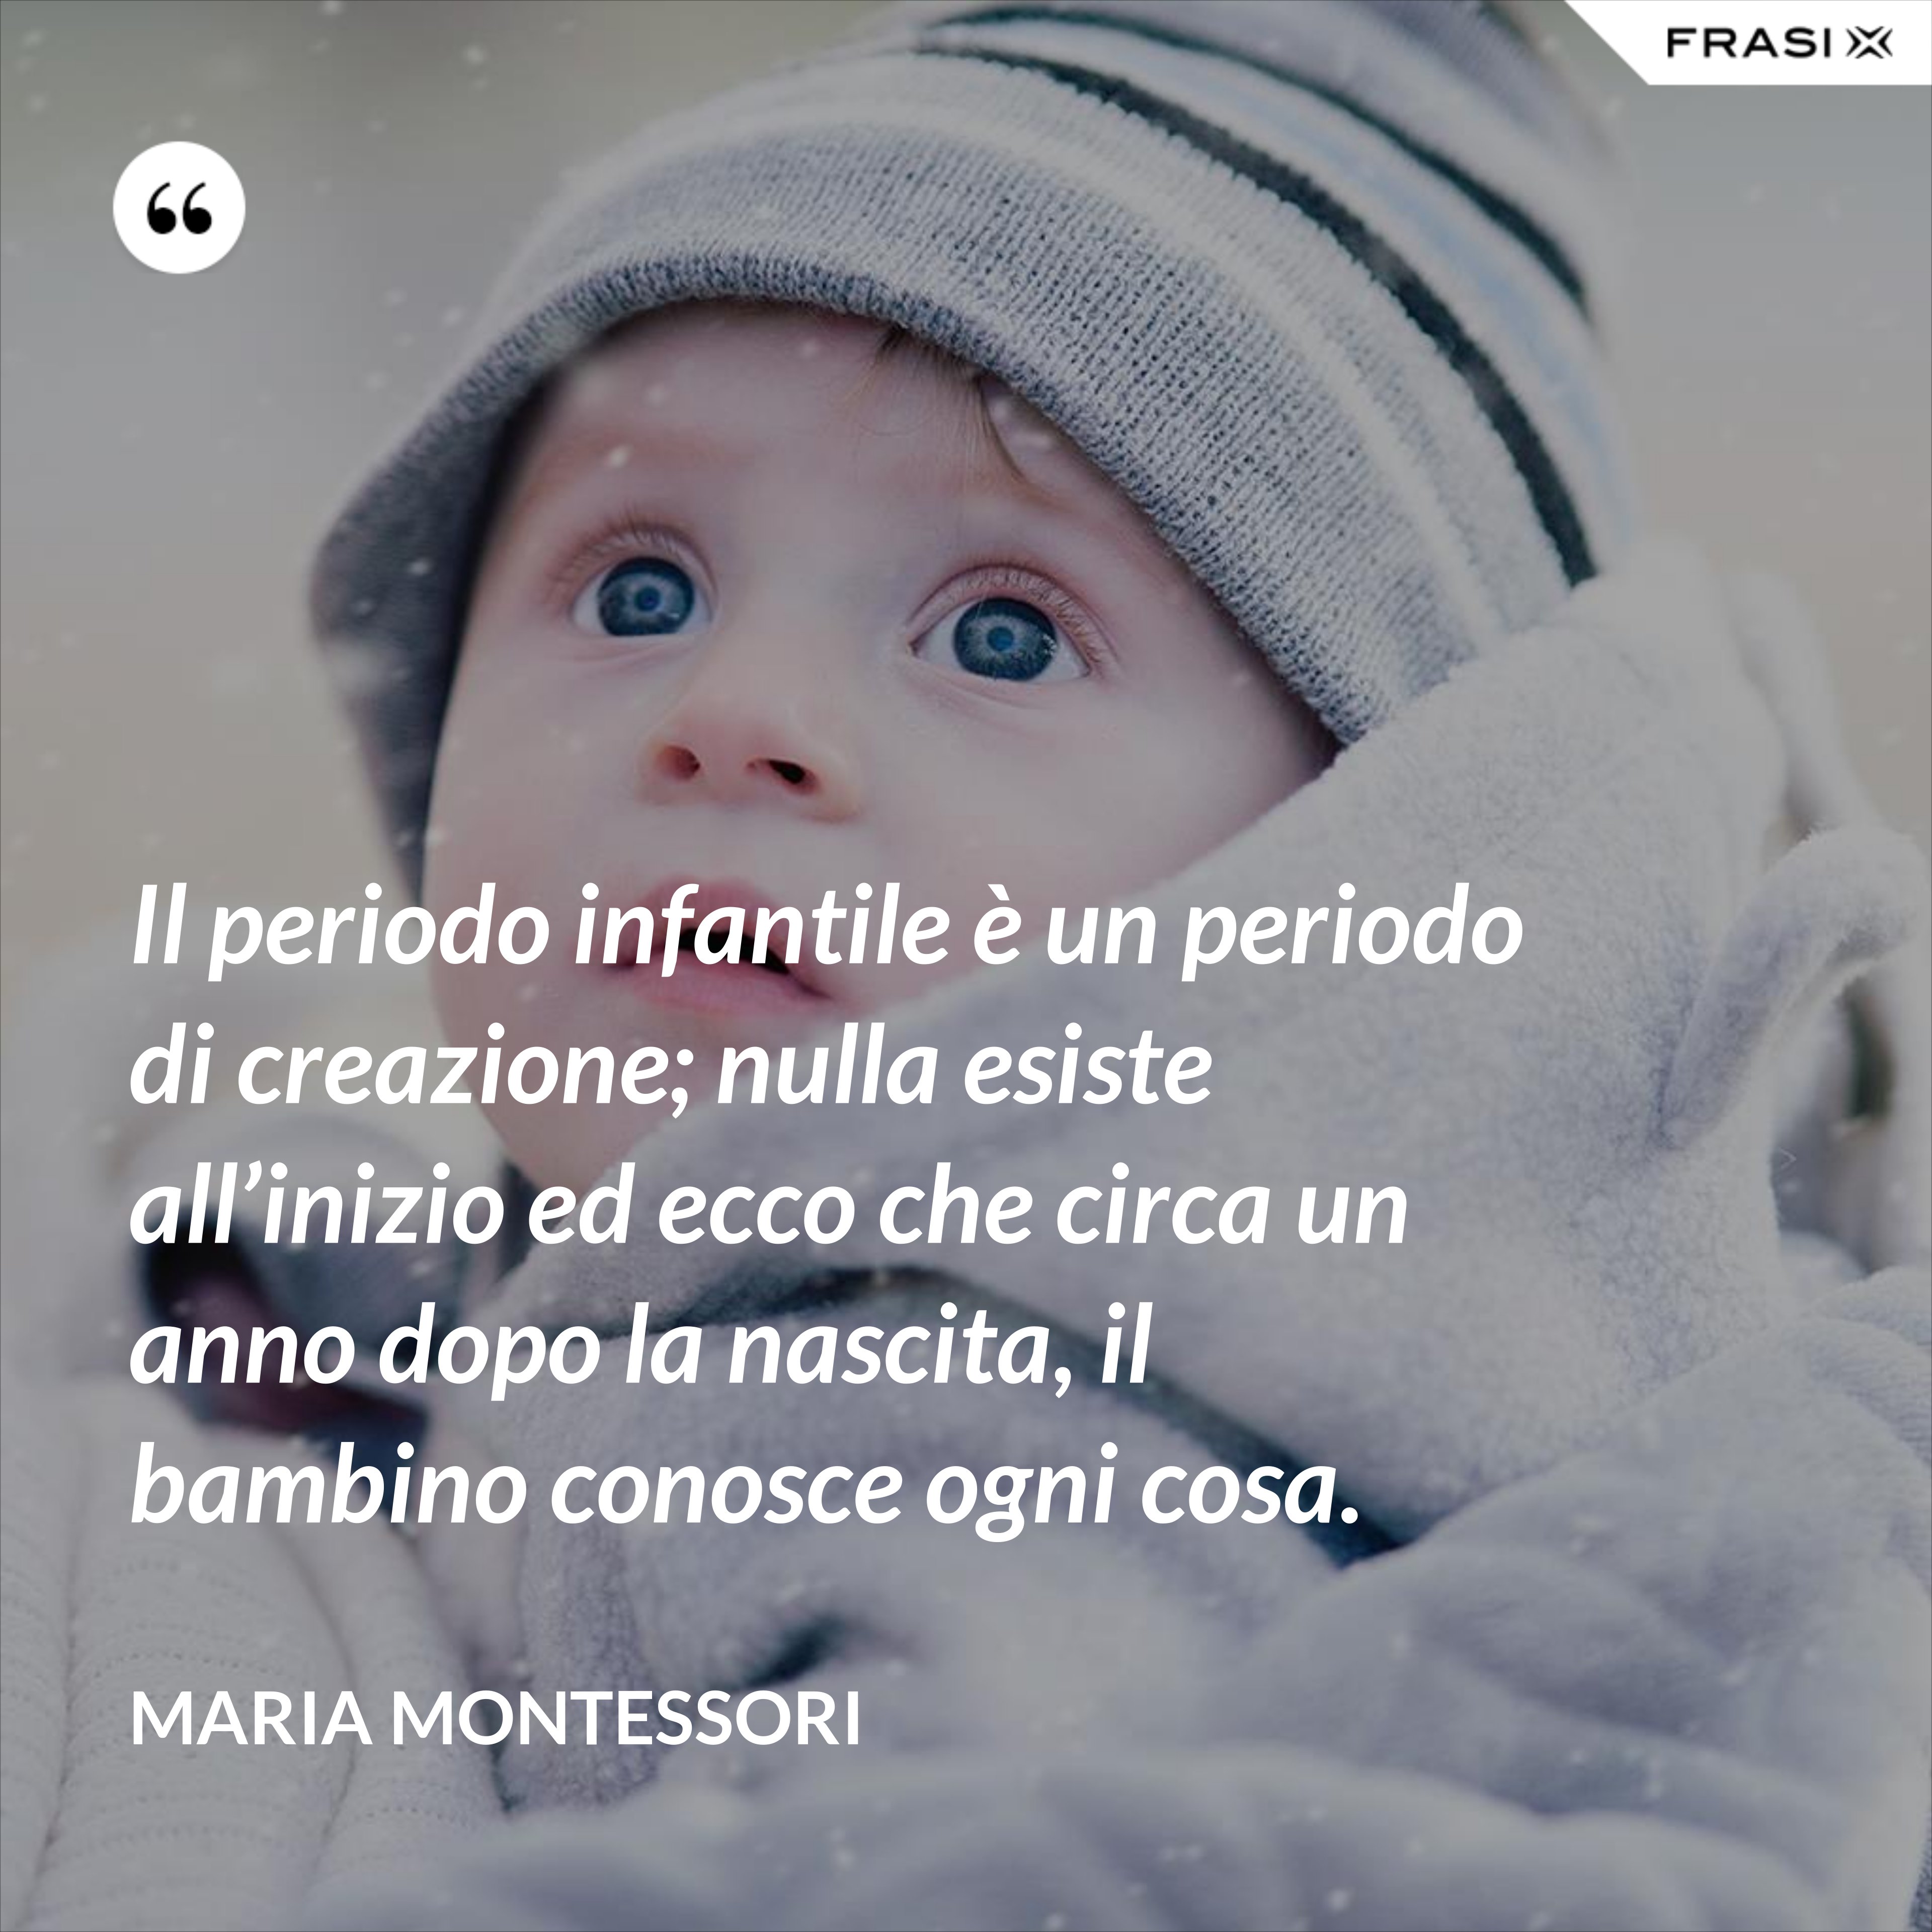 Il periodo infantile è un periodo di creazione; nulla esiste all’inizio ed ecco che circa un anno dopo la nascita, il bambino conosce ogni cosa. - Maria Montessori